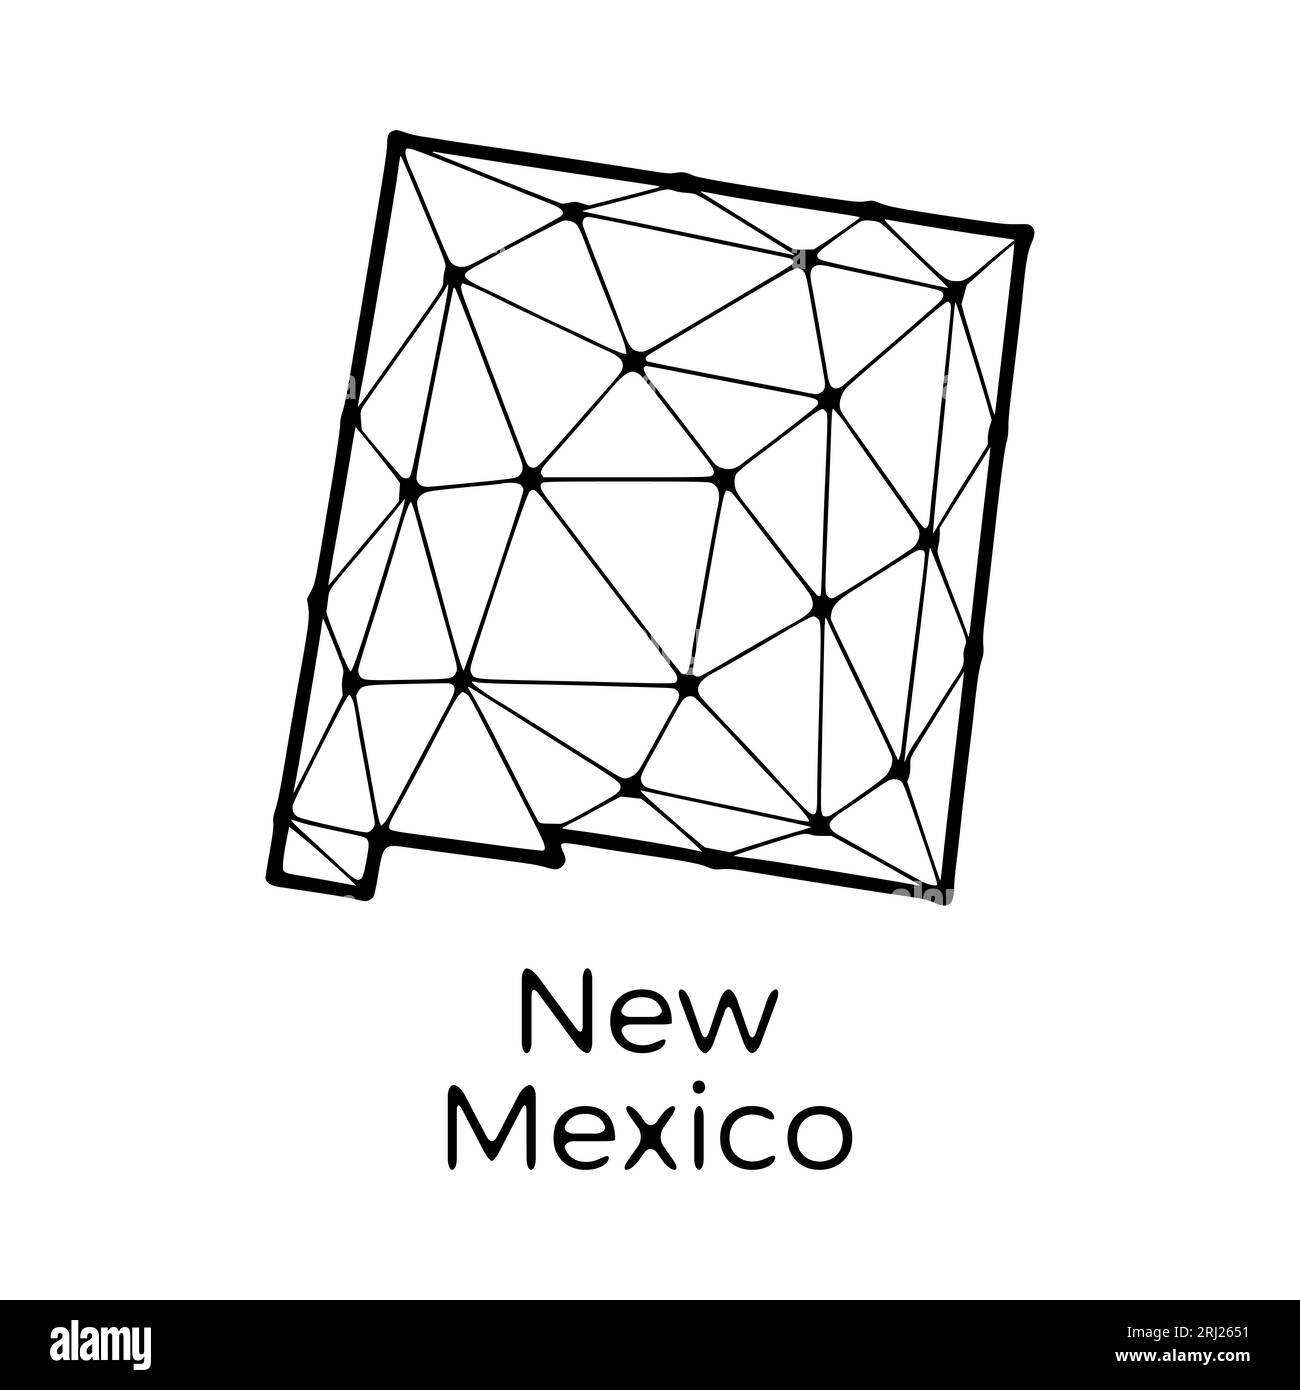 New Mexico State Map polygonale Abbildung aus Linien und Punkten, isoliert auf weißem Hintergrund. US-Bundesstaat mit niedrigem Poly-Design Stock Vektor